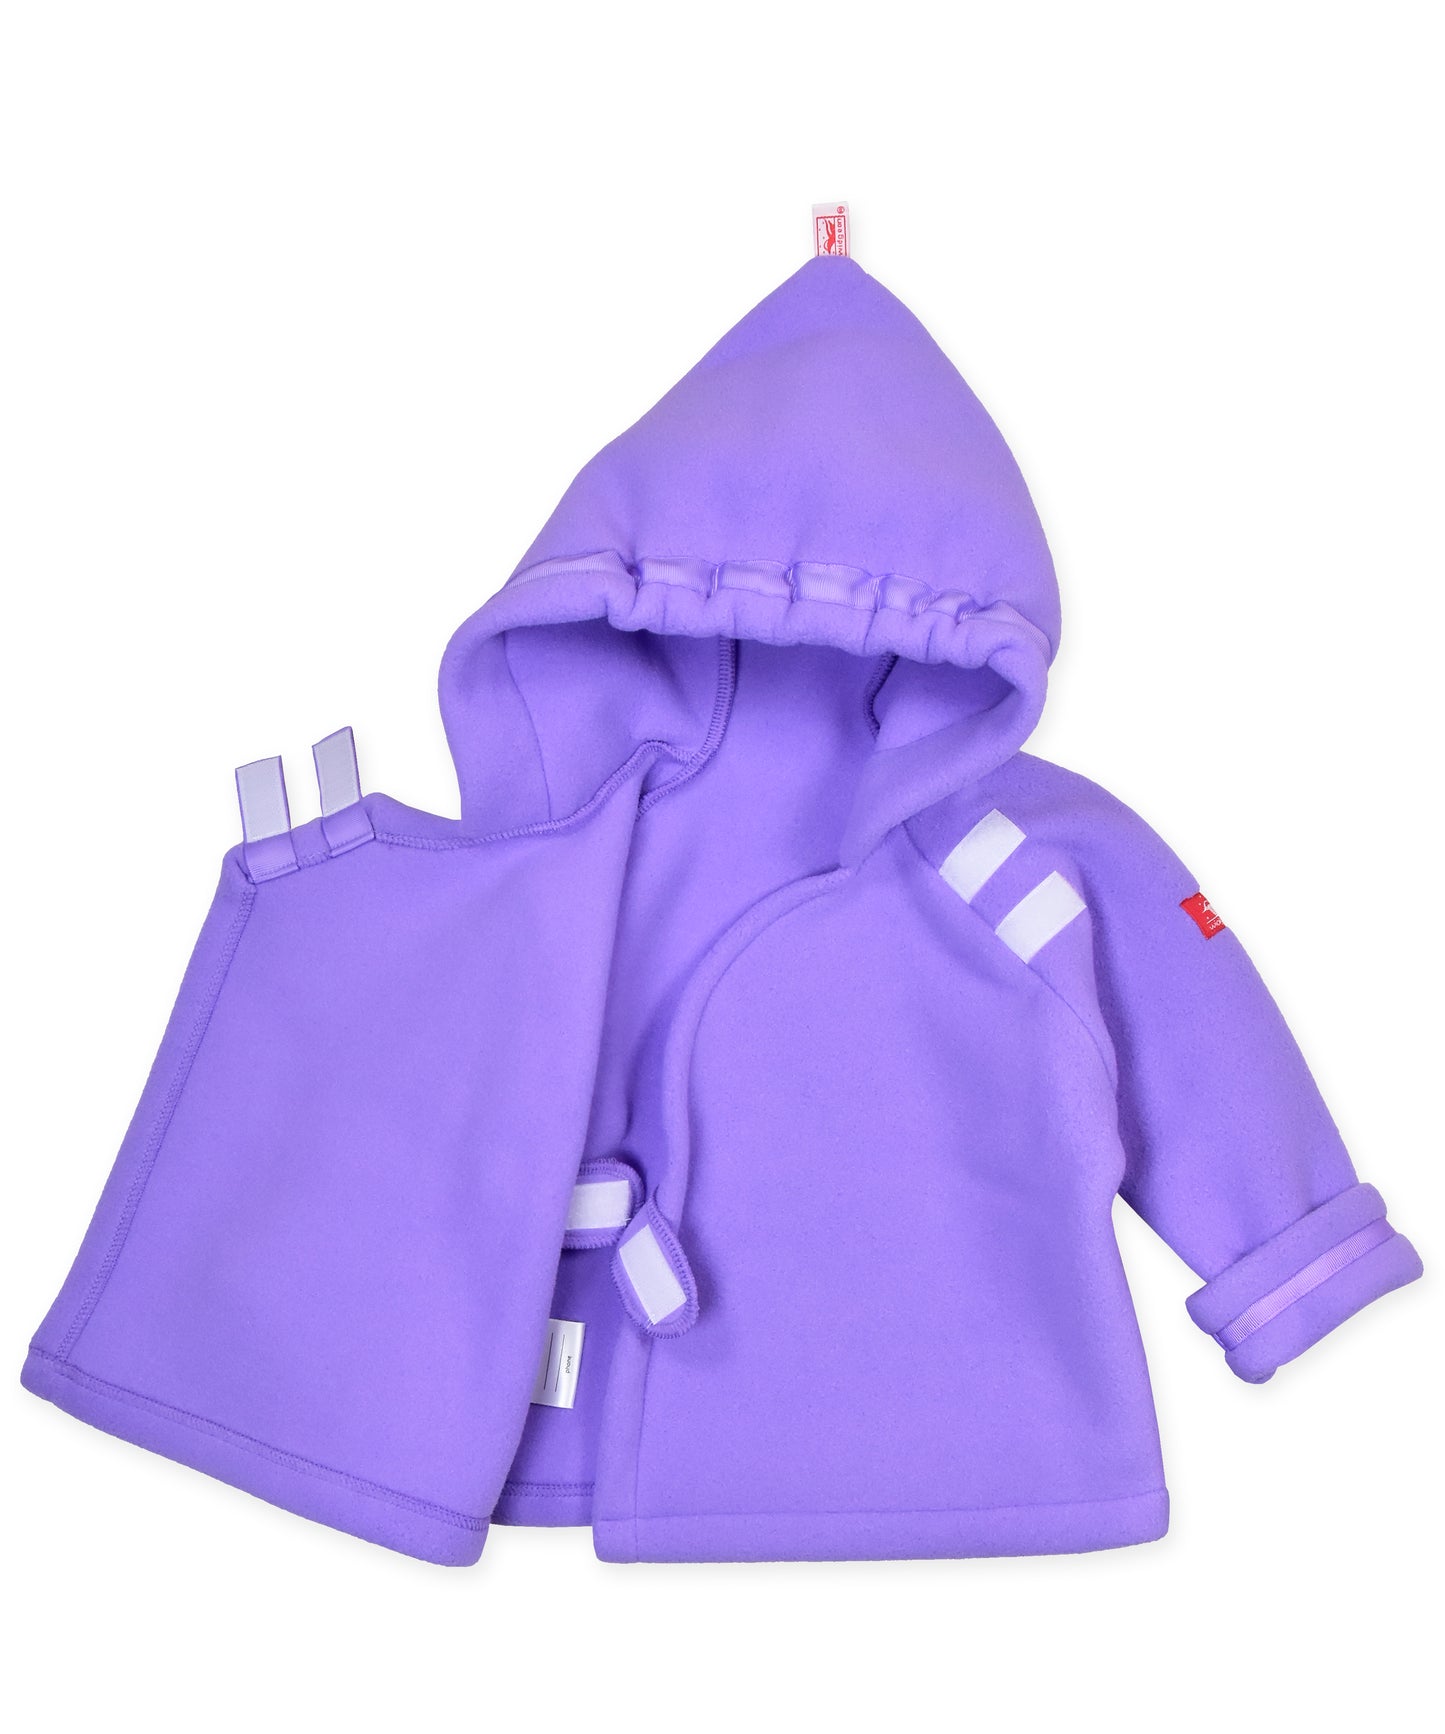 Warmplus Favorite Water Repellent Polartec® Fleece Jacket